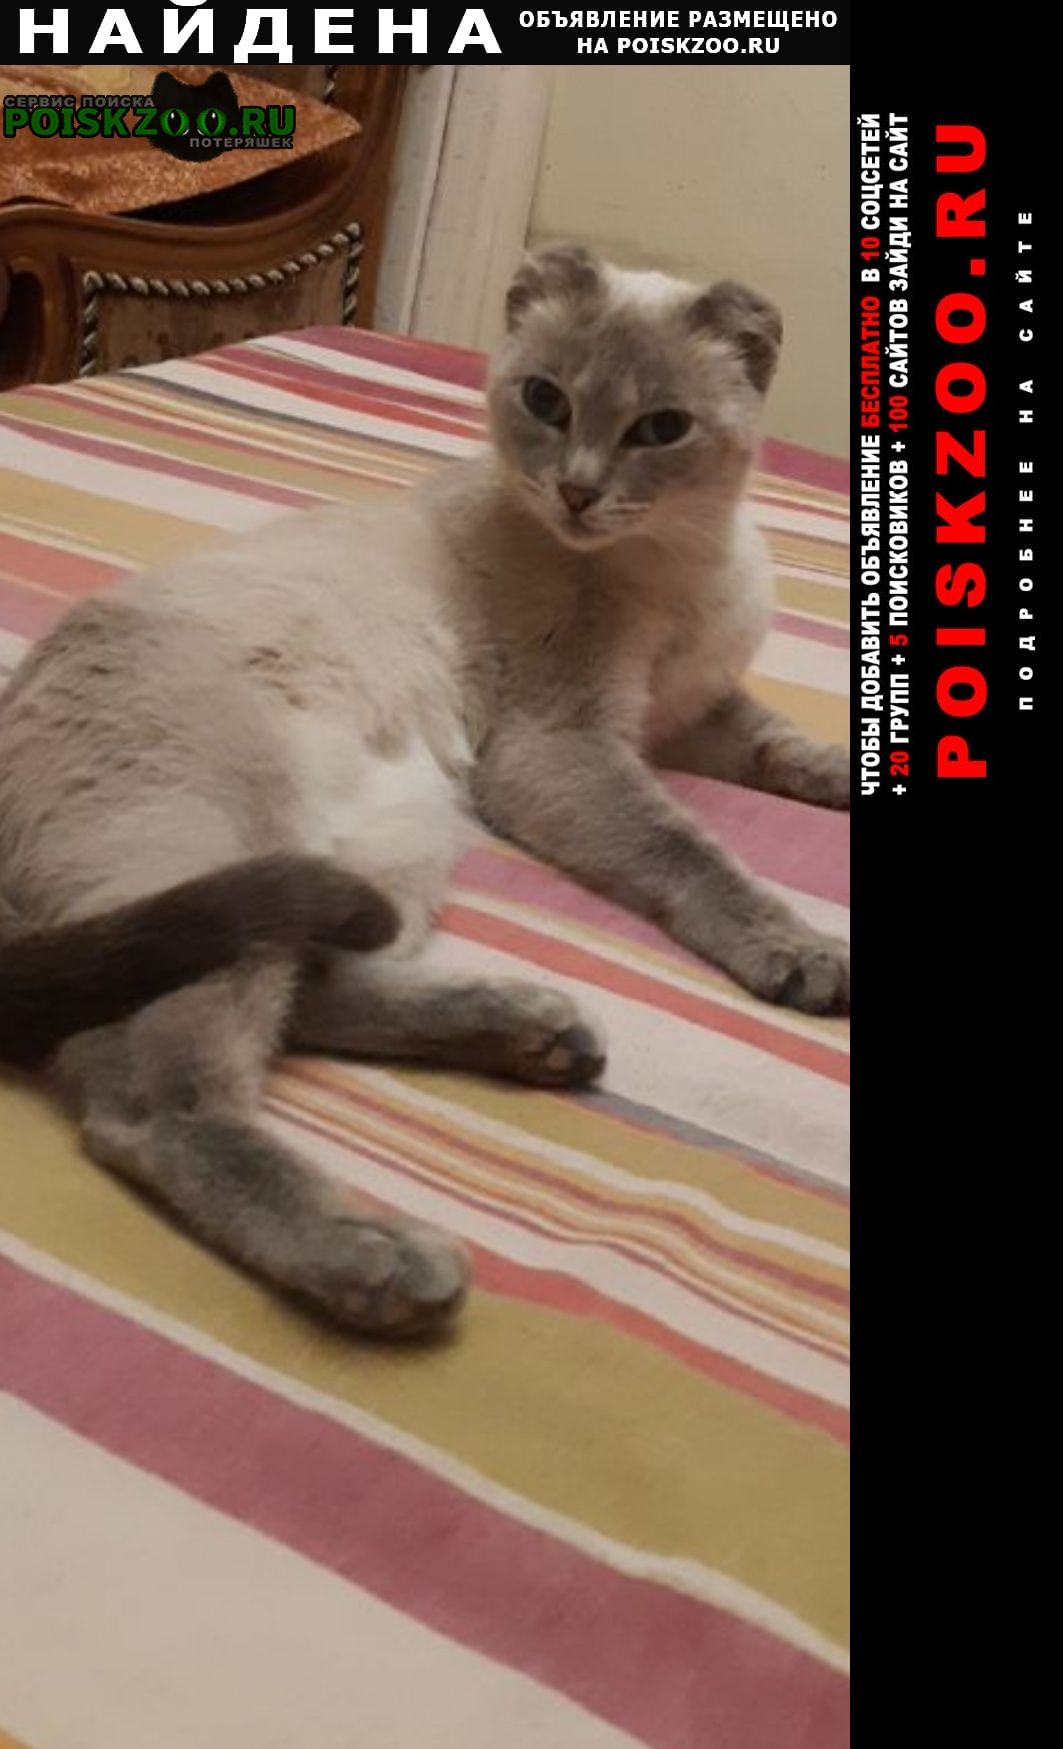 Улан-Удэ Найдена кошка в сотых кварталах